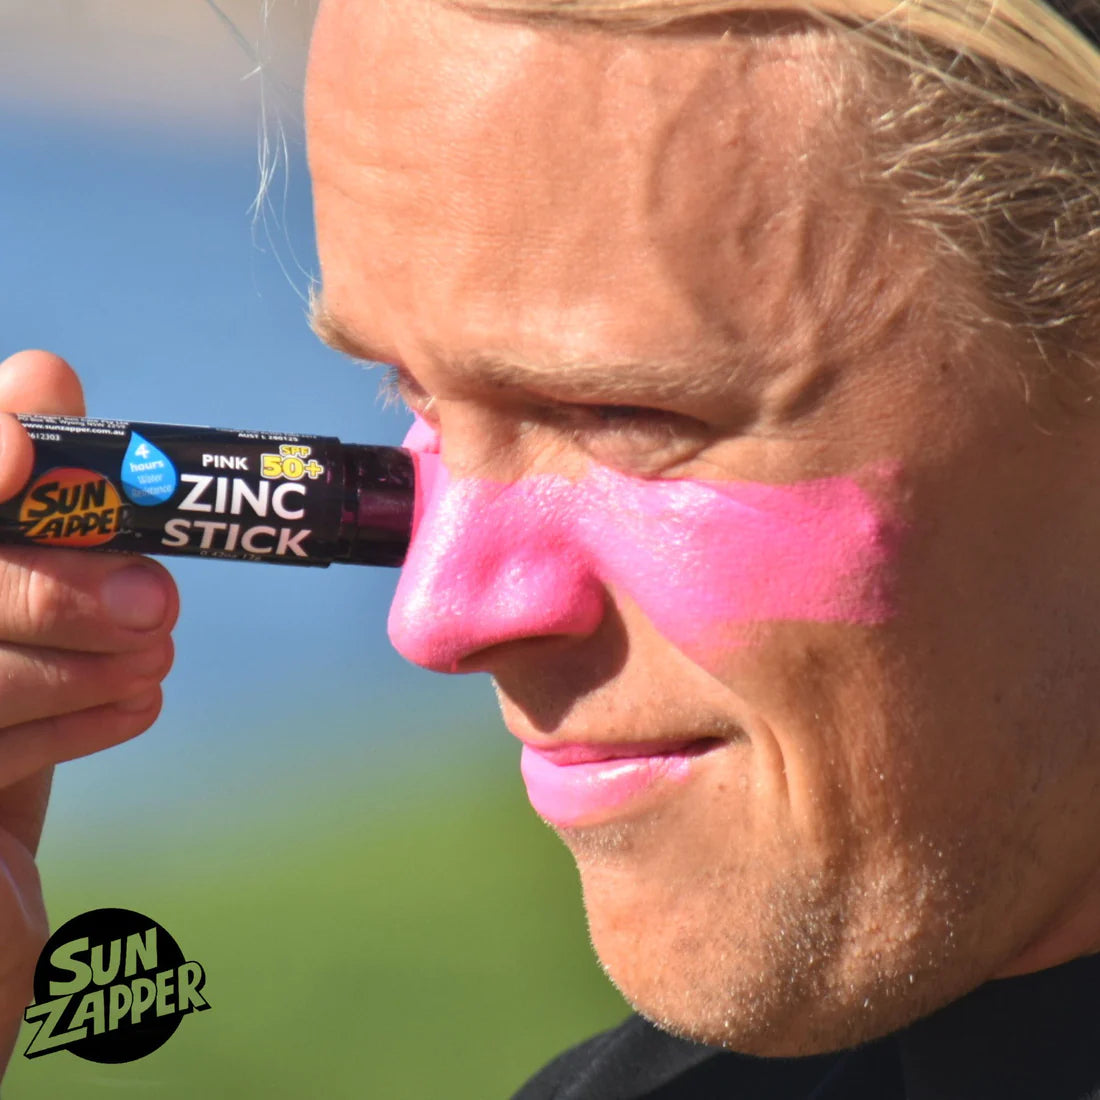 Sun Zapper Pink Zinc Stick SPF 50+ Zinc Oxide Sunscreen Stick